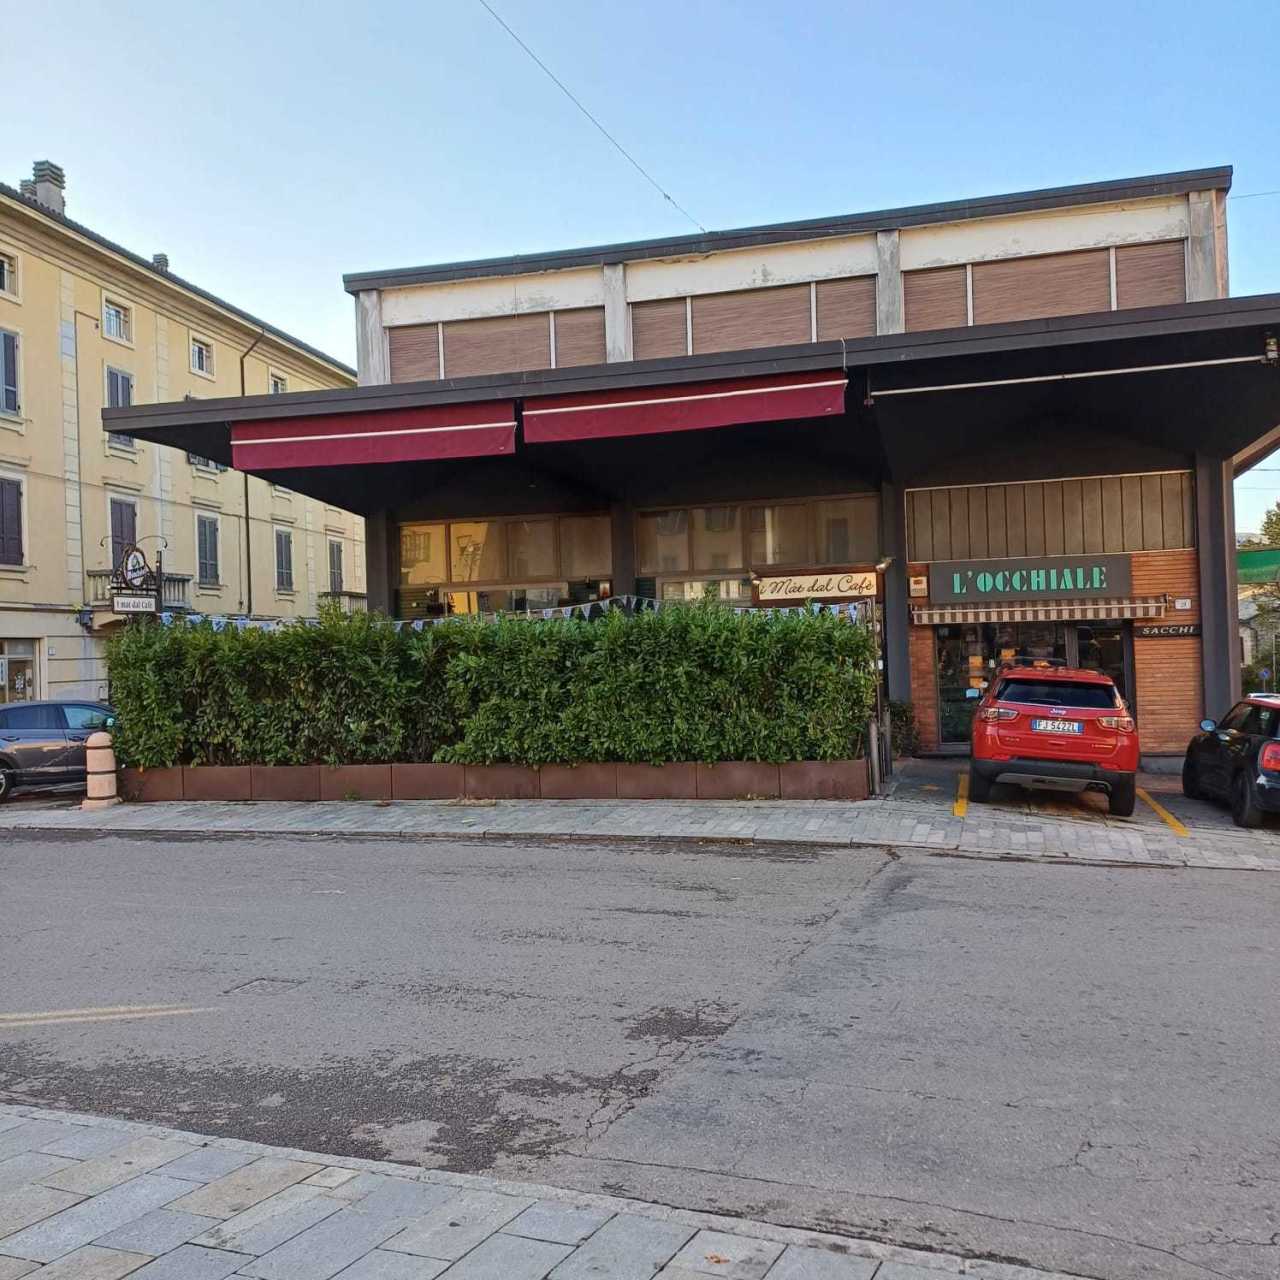 Pub / Discoteca / Locale in vendita a Fornovo di Taro, 4 locali, prezzo € 130.000 | PortaleAgenzieImmobiliari.it